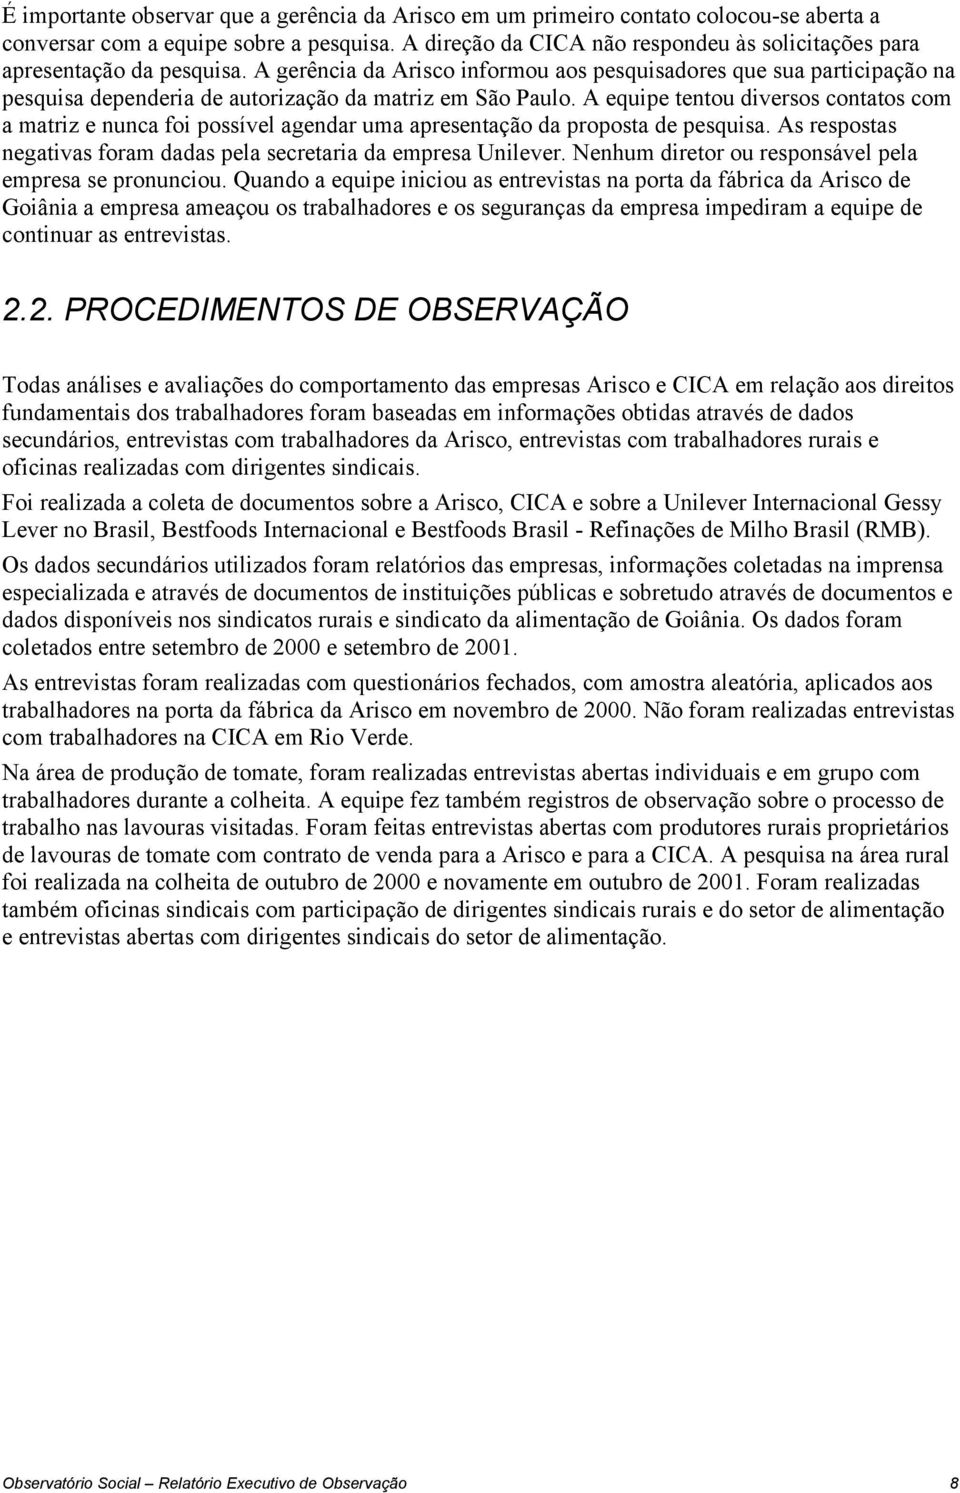 A gerência da Arisco informou aos pesquisadores que sua participação na pesquisa dependeria de autorização da matriz em São Paulo.